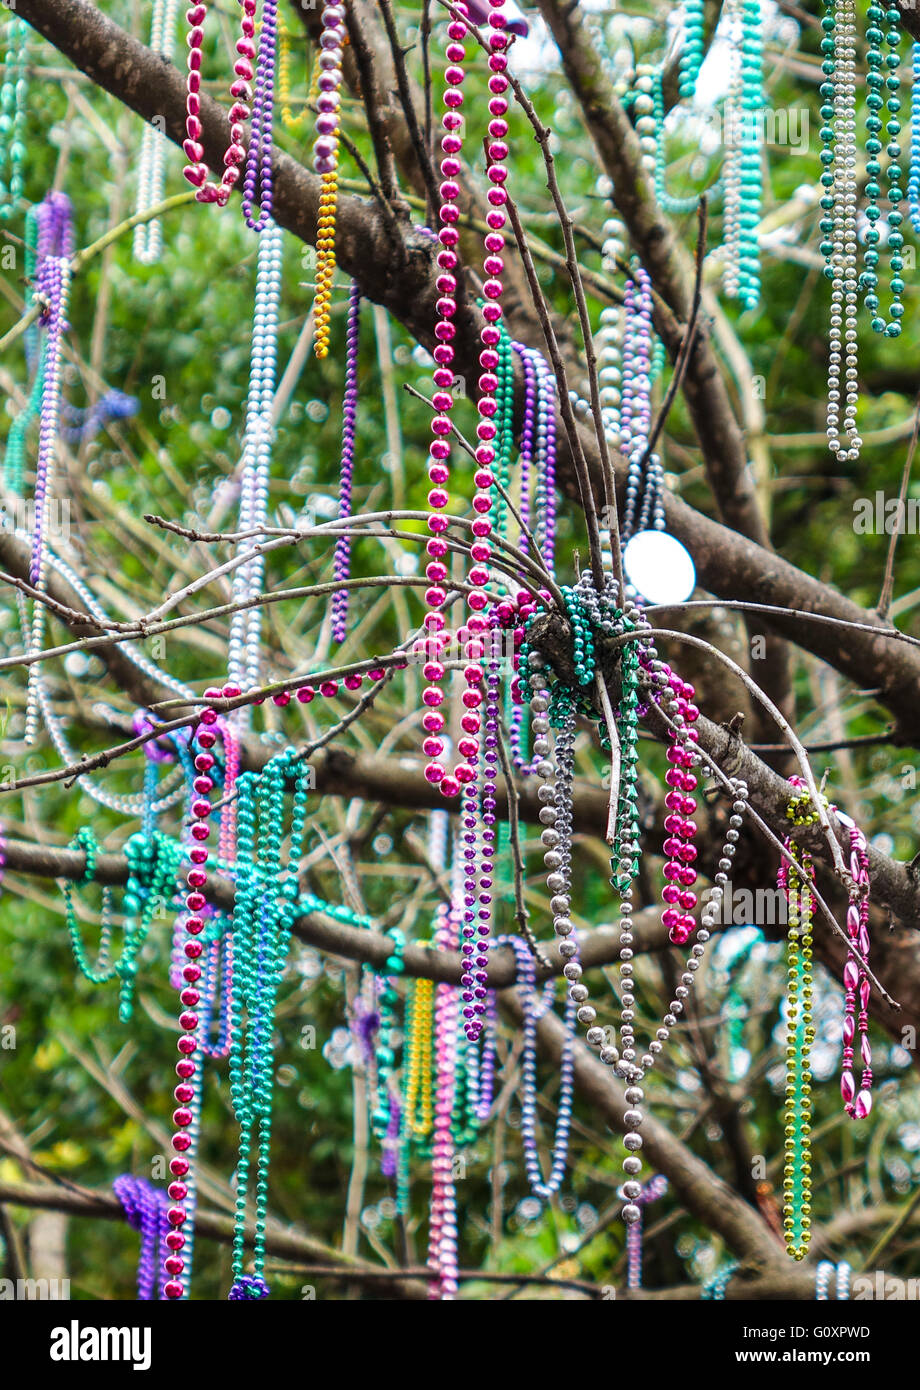 Bunte Ketten hängen in den Bäumen von New Orleans Stockfotografie - Alamy